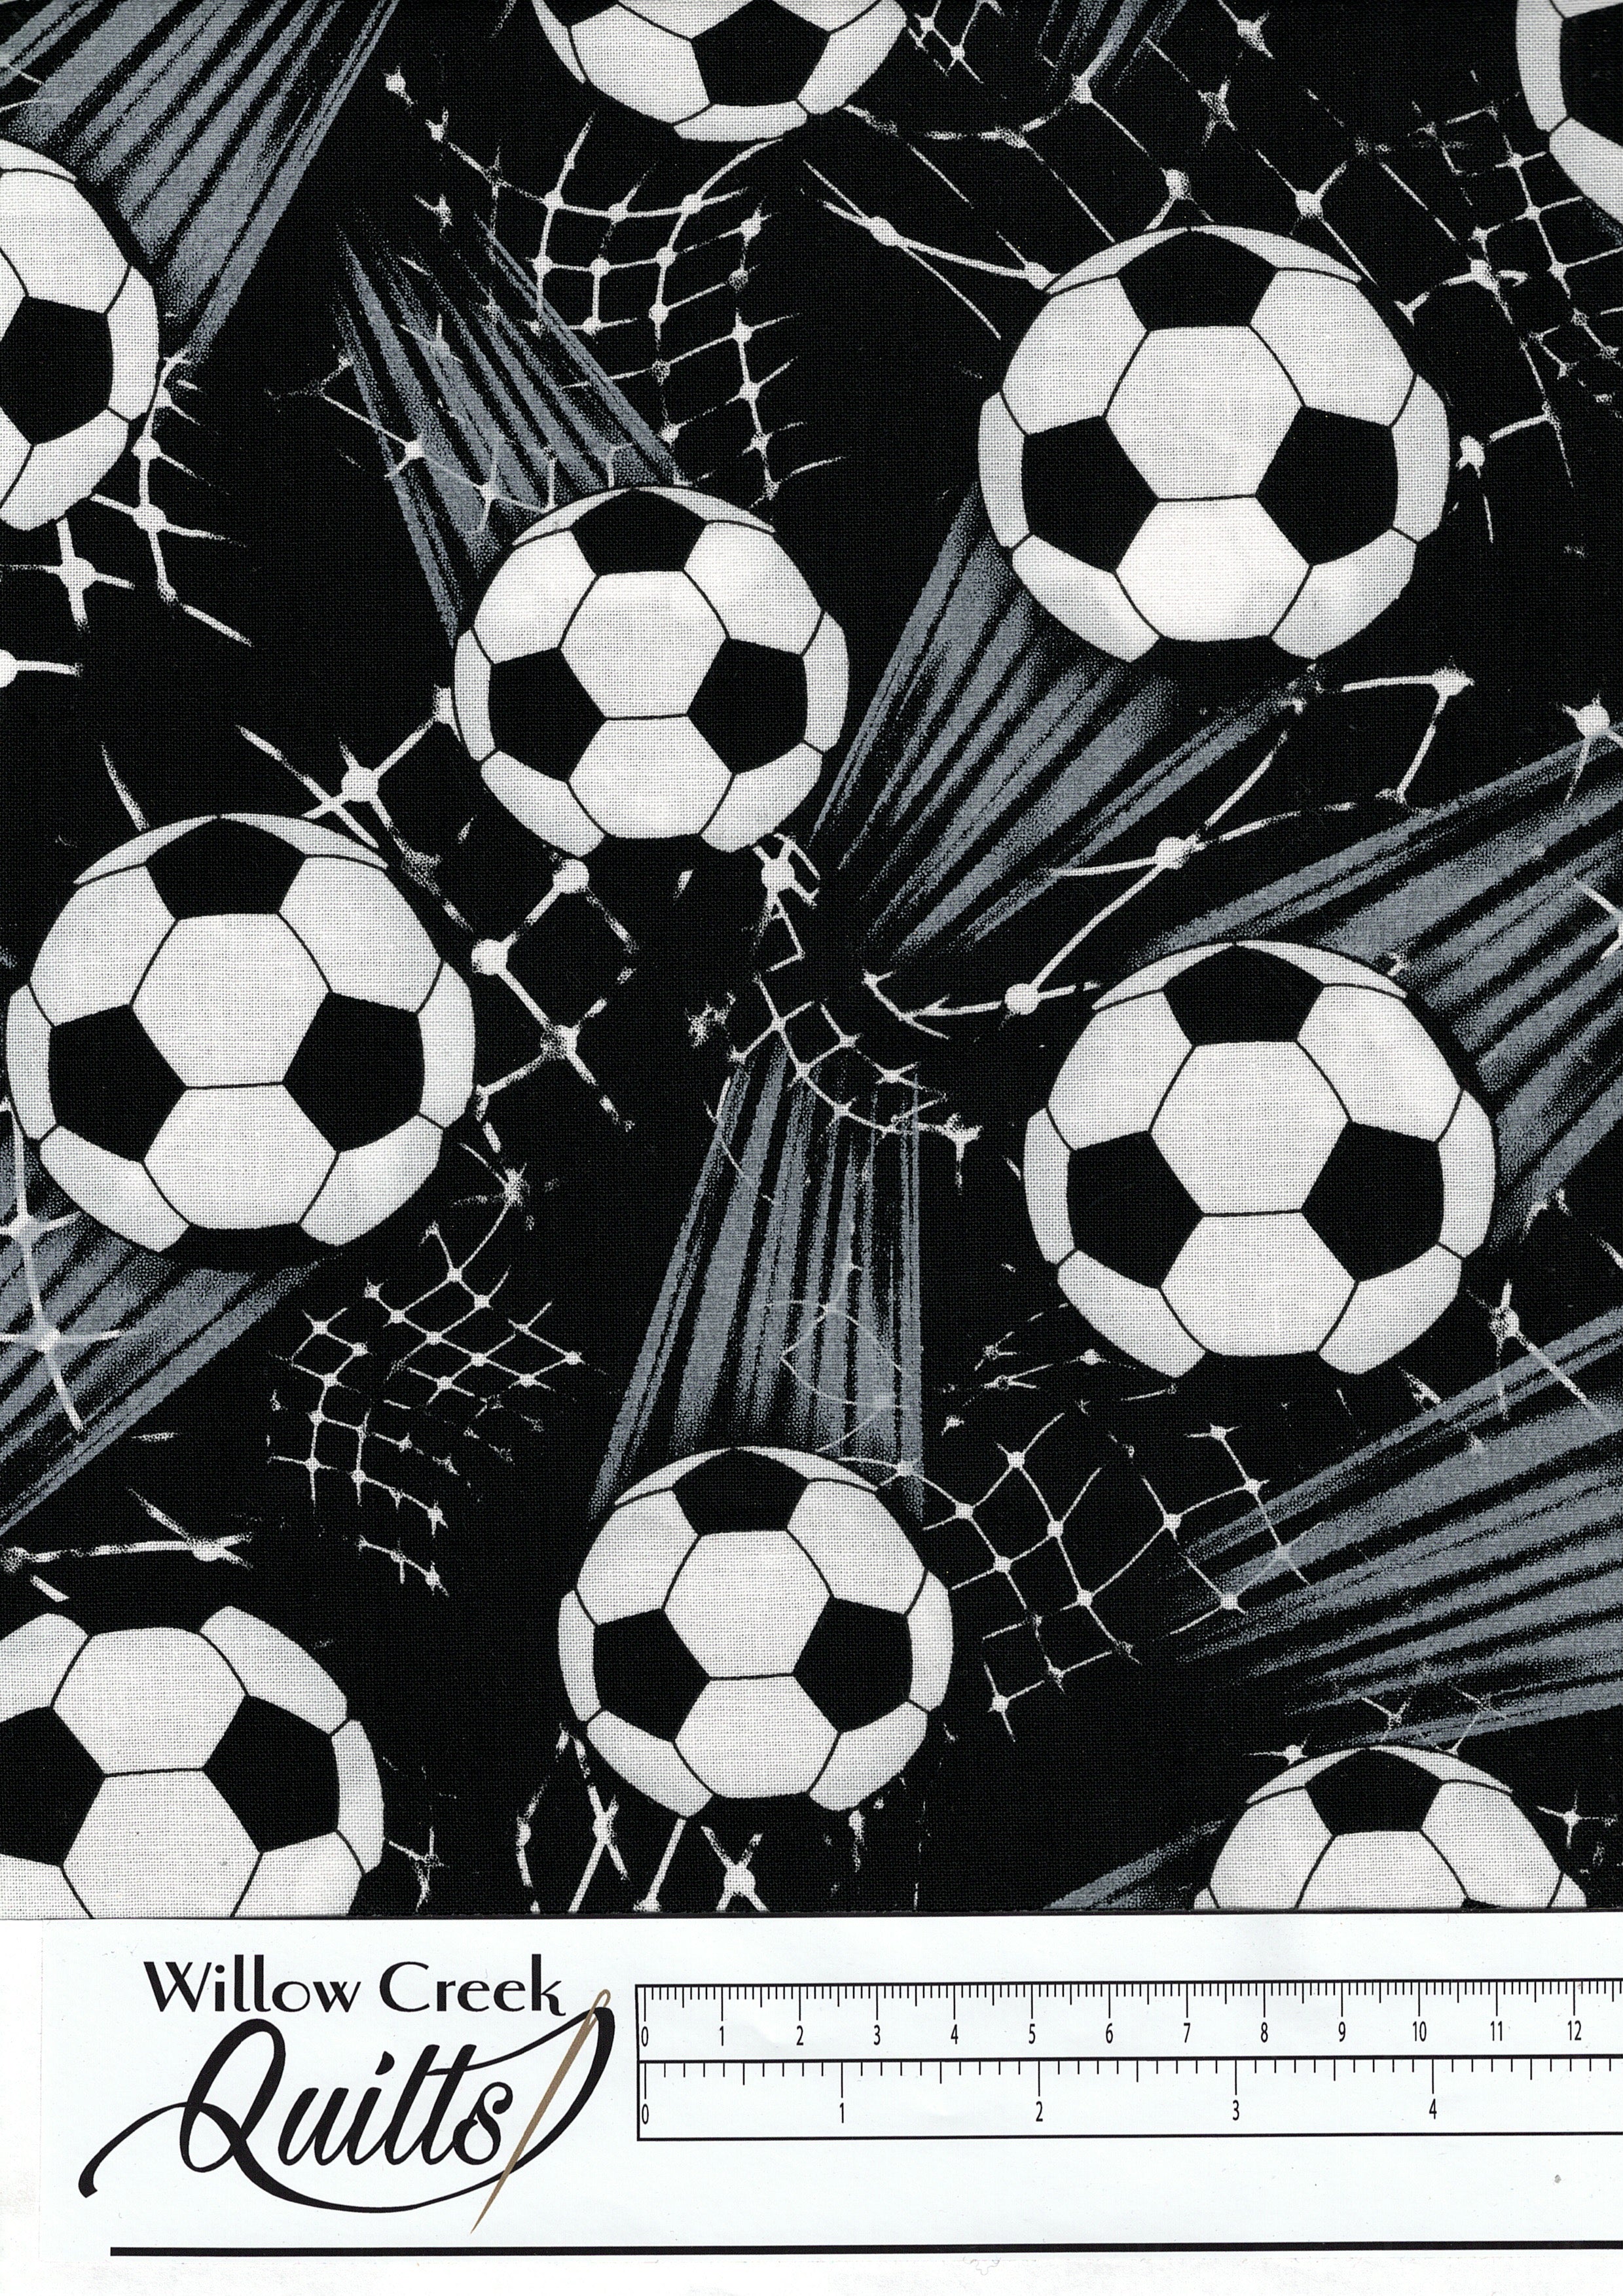 Sport - Goal Tossed - Soccer balls - Black - C6031